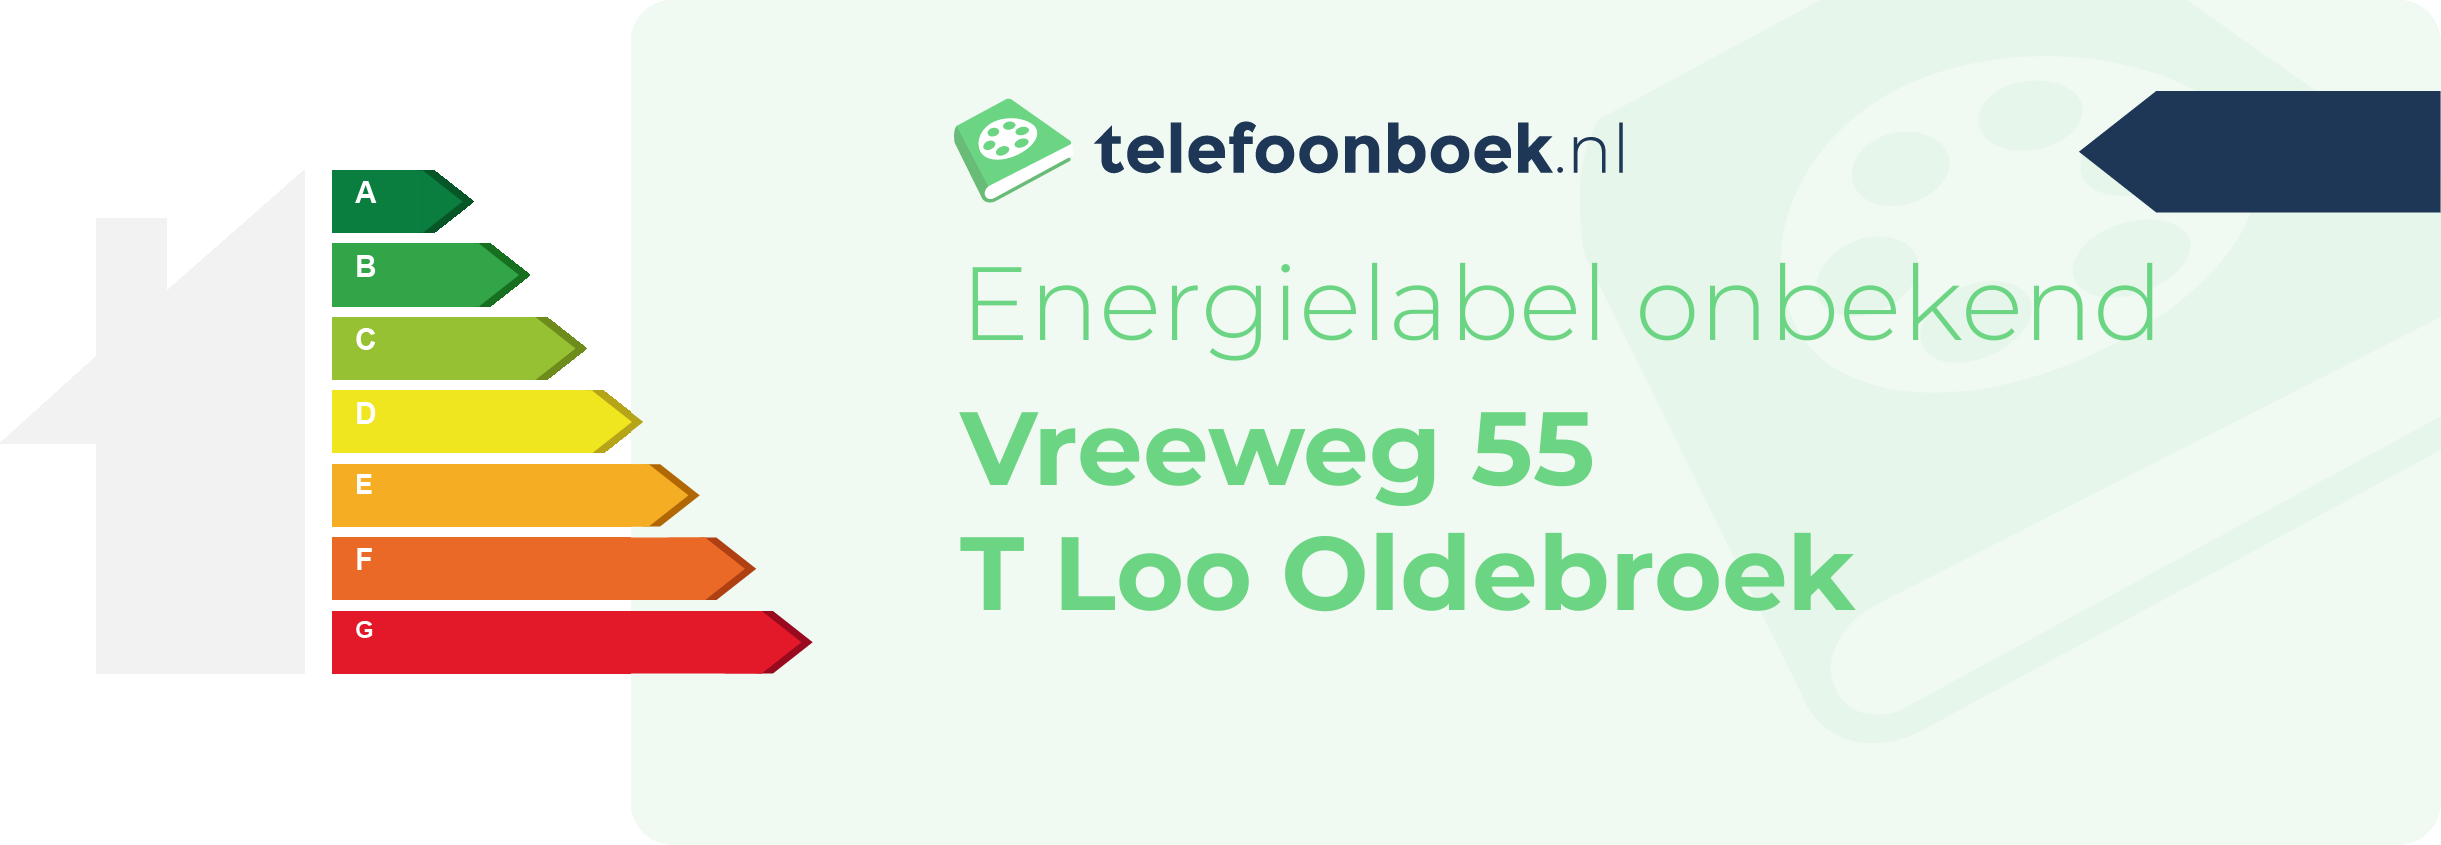 Energielabel Vreeweg 55 T Loo Oldebroek